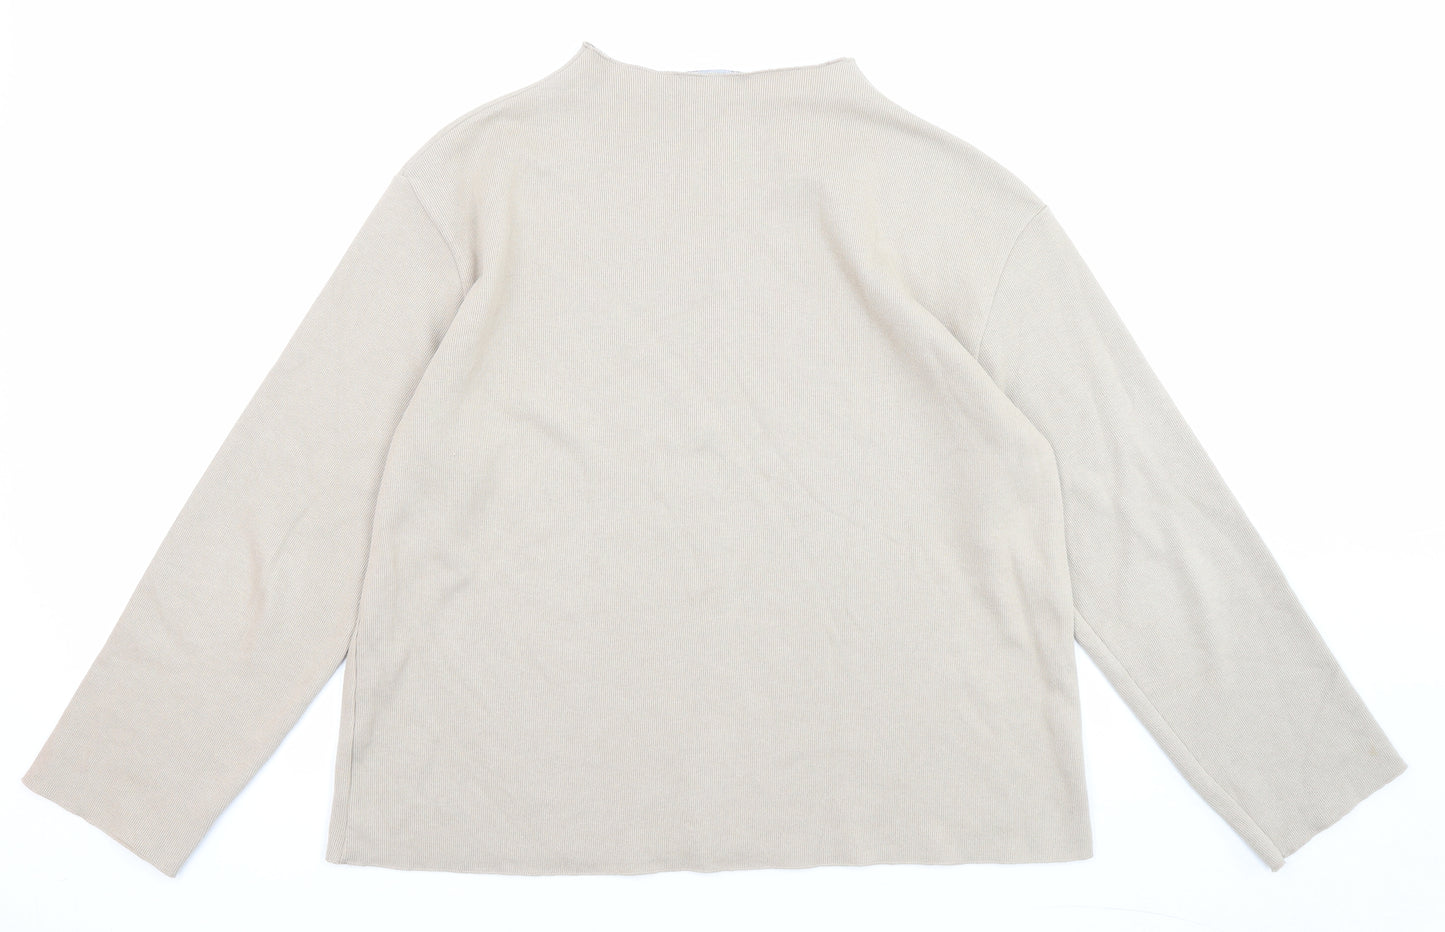 Zara Womens Beige High Neck Cotton Pullover Jumper Size L